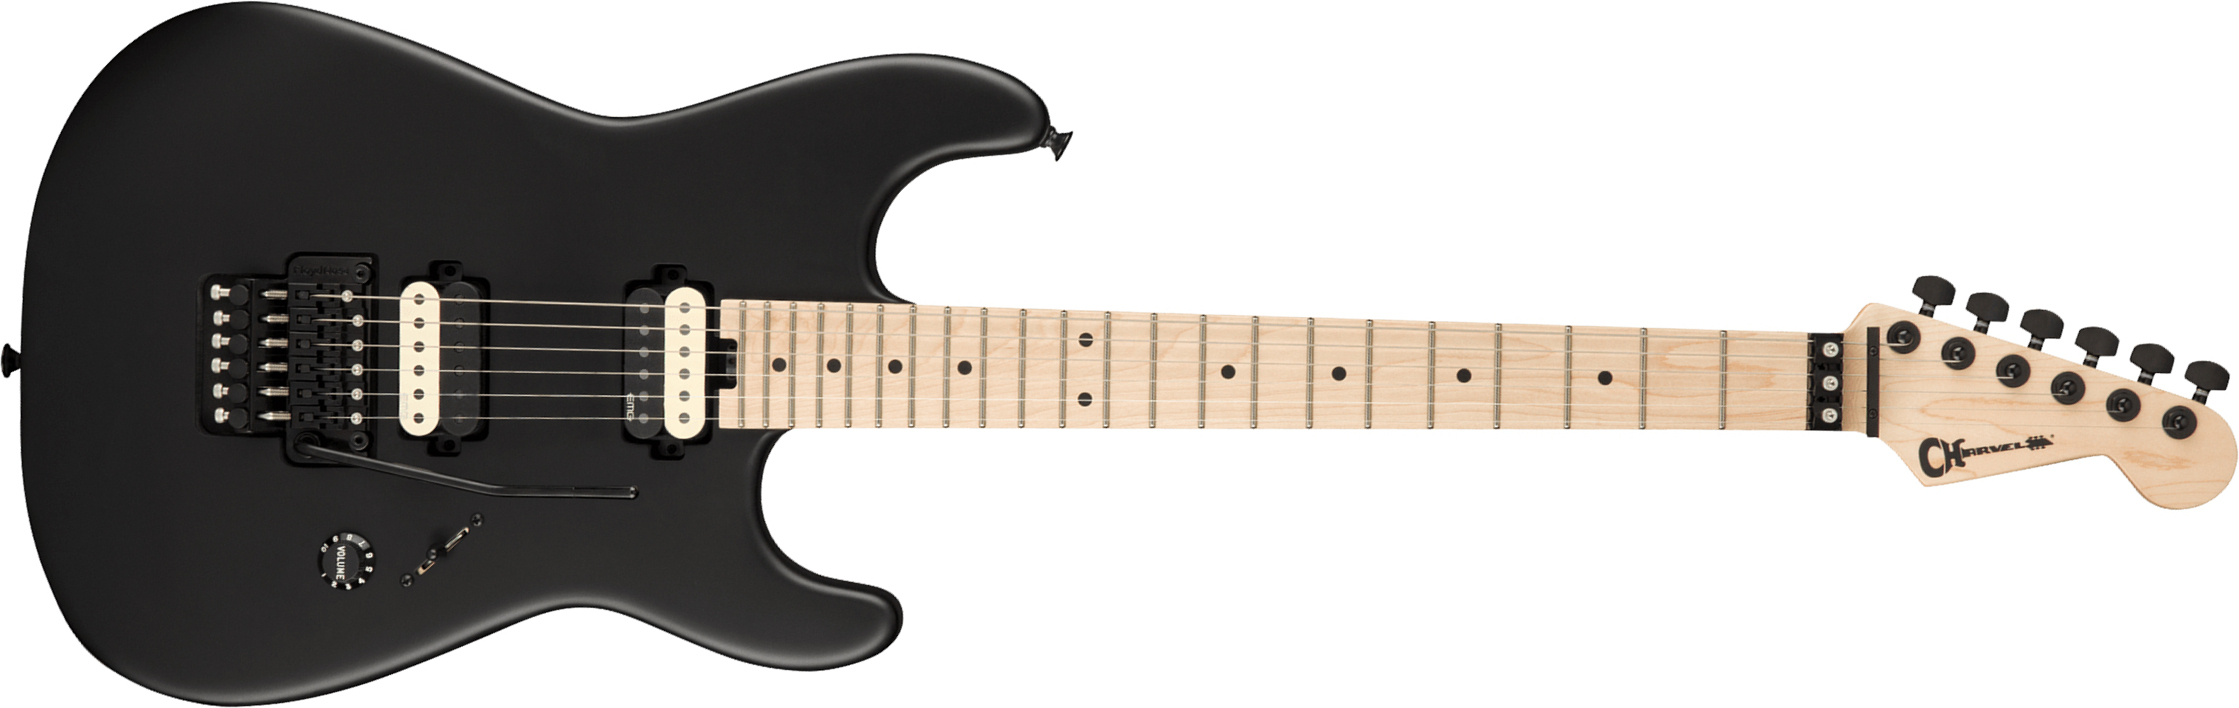 Charvel Jim Root San Dimas Style 1 Hh Fr M Pro-mod Signature 2h Emg Mn - Satin Black - Guitarra eléctrica con forma de str. - Main picture